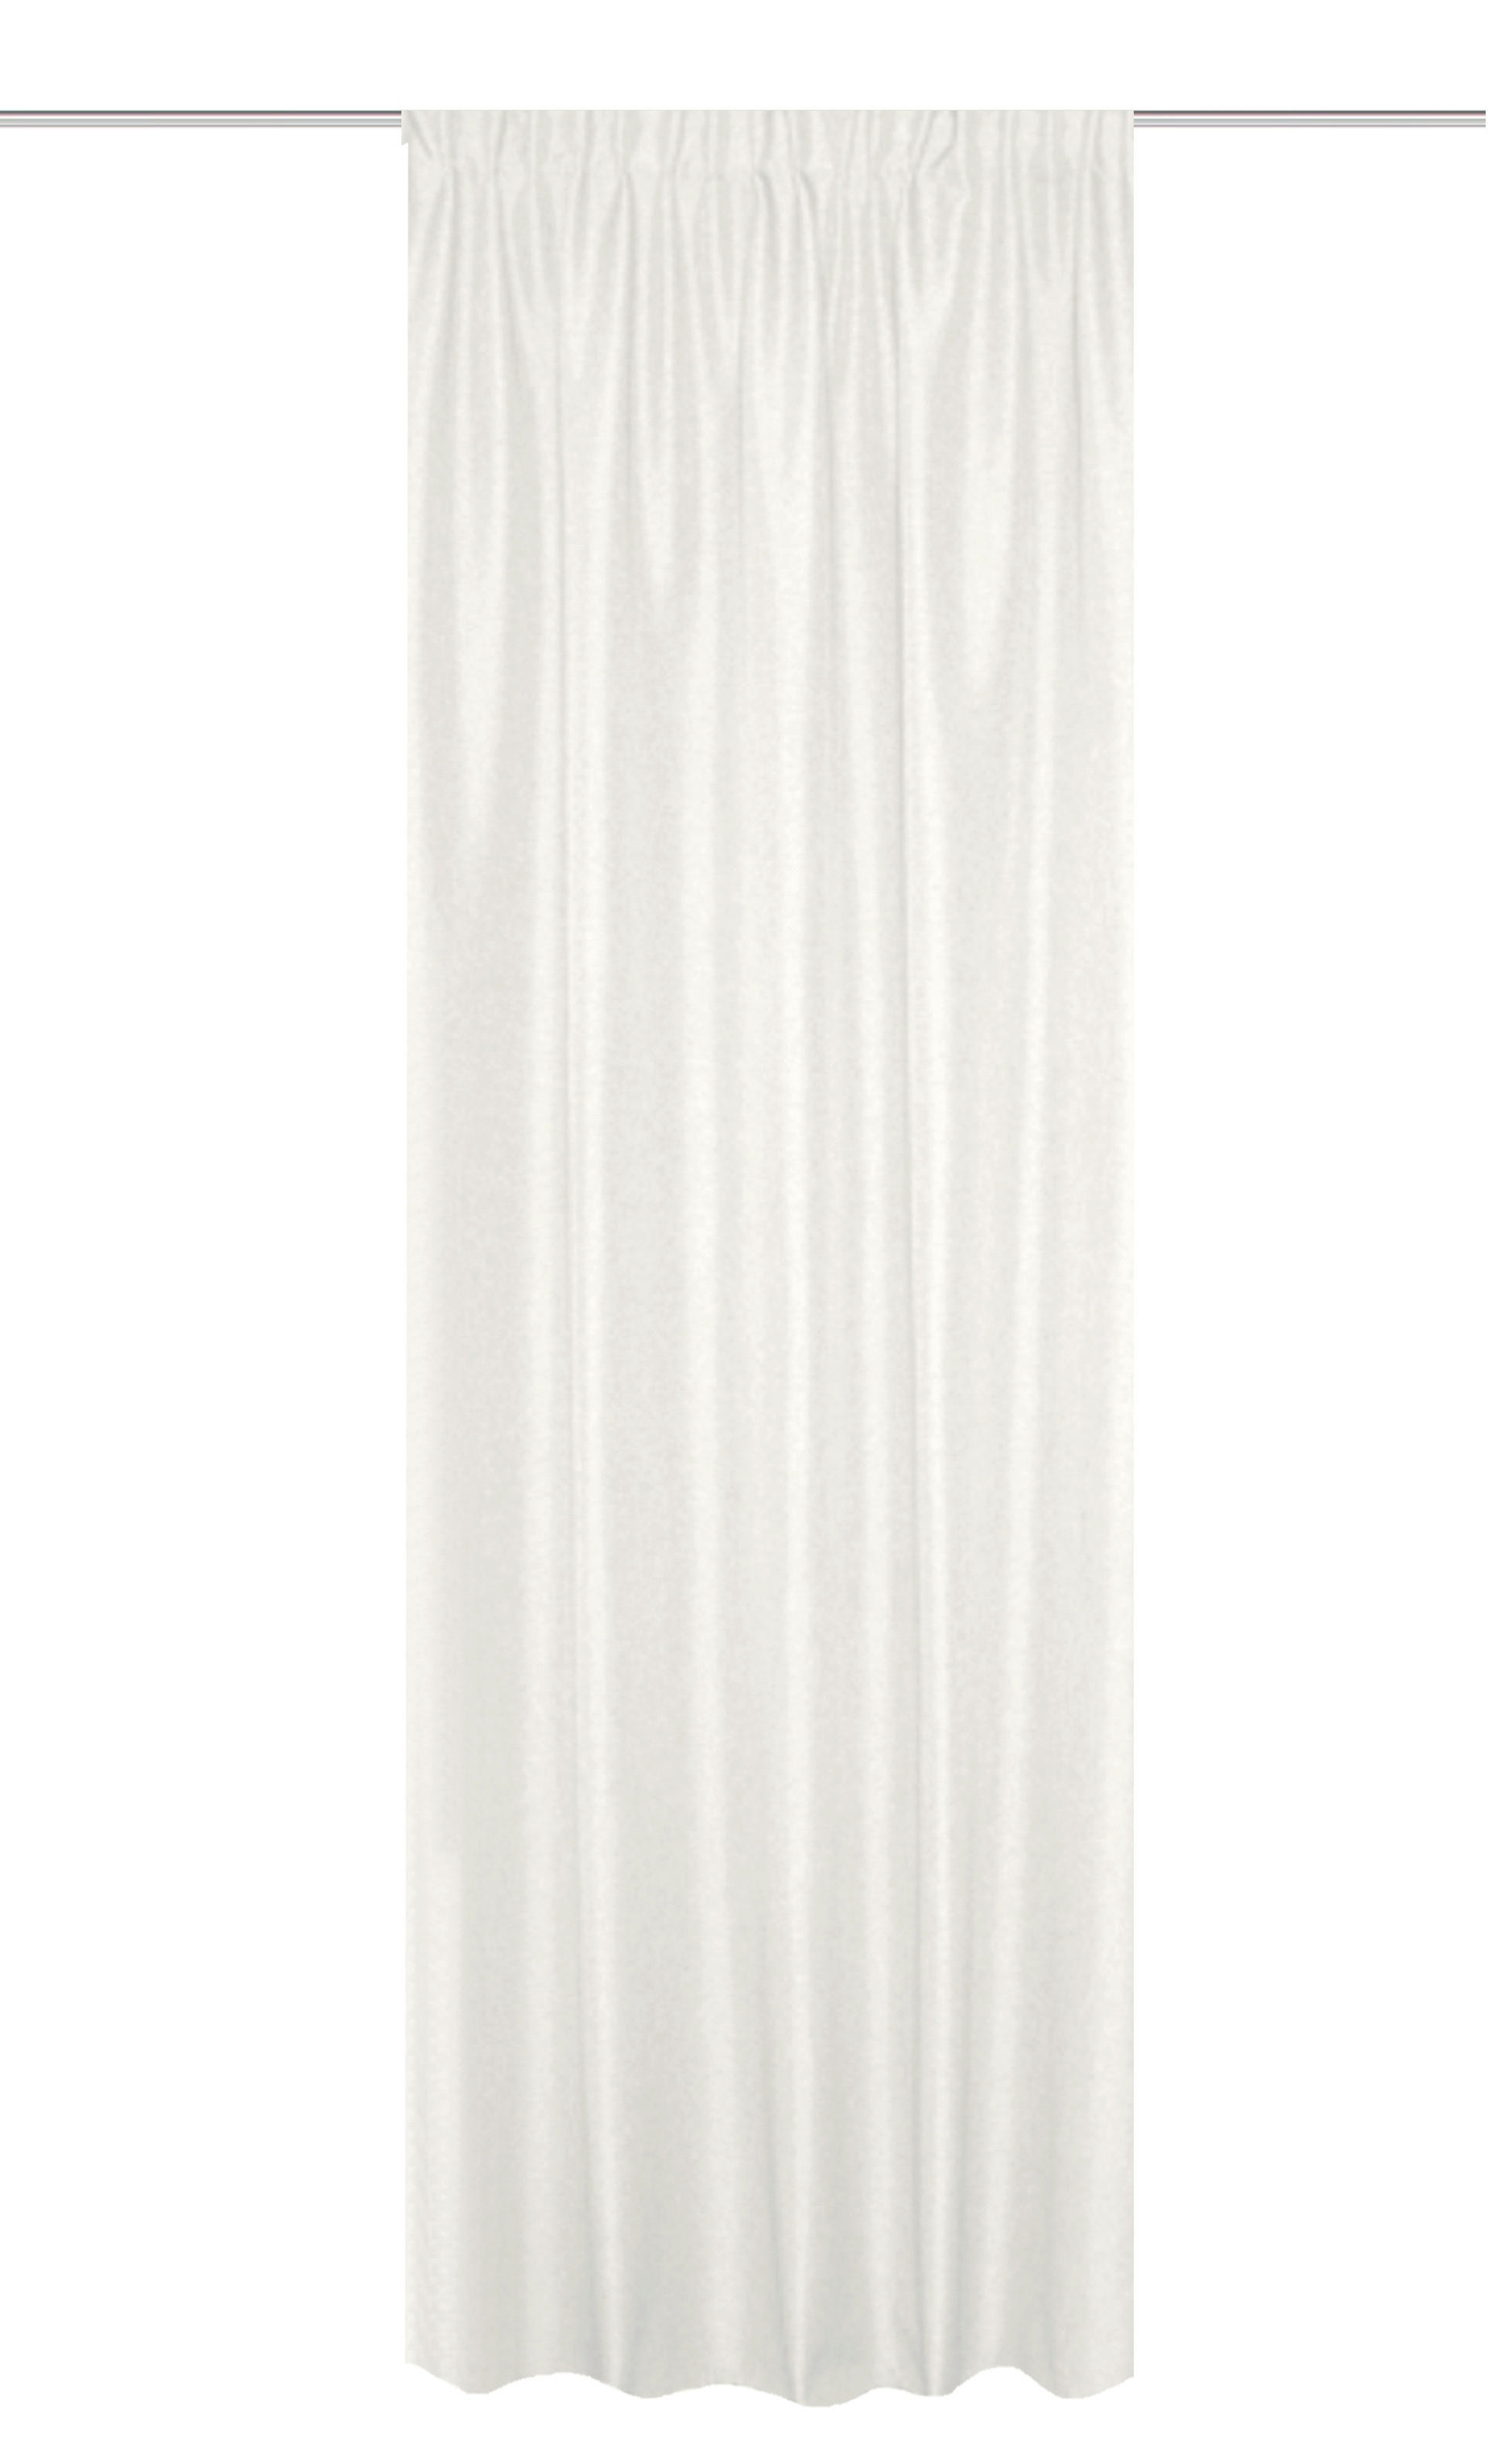 WÄRMESCHUTZVORHANG  blickdicht  135/245 cm   - Weiß, Basics, Textil (135/245cm) - Schmidt W. Gmbh